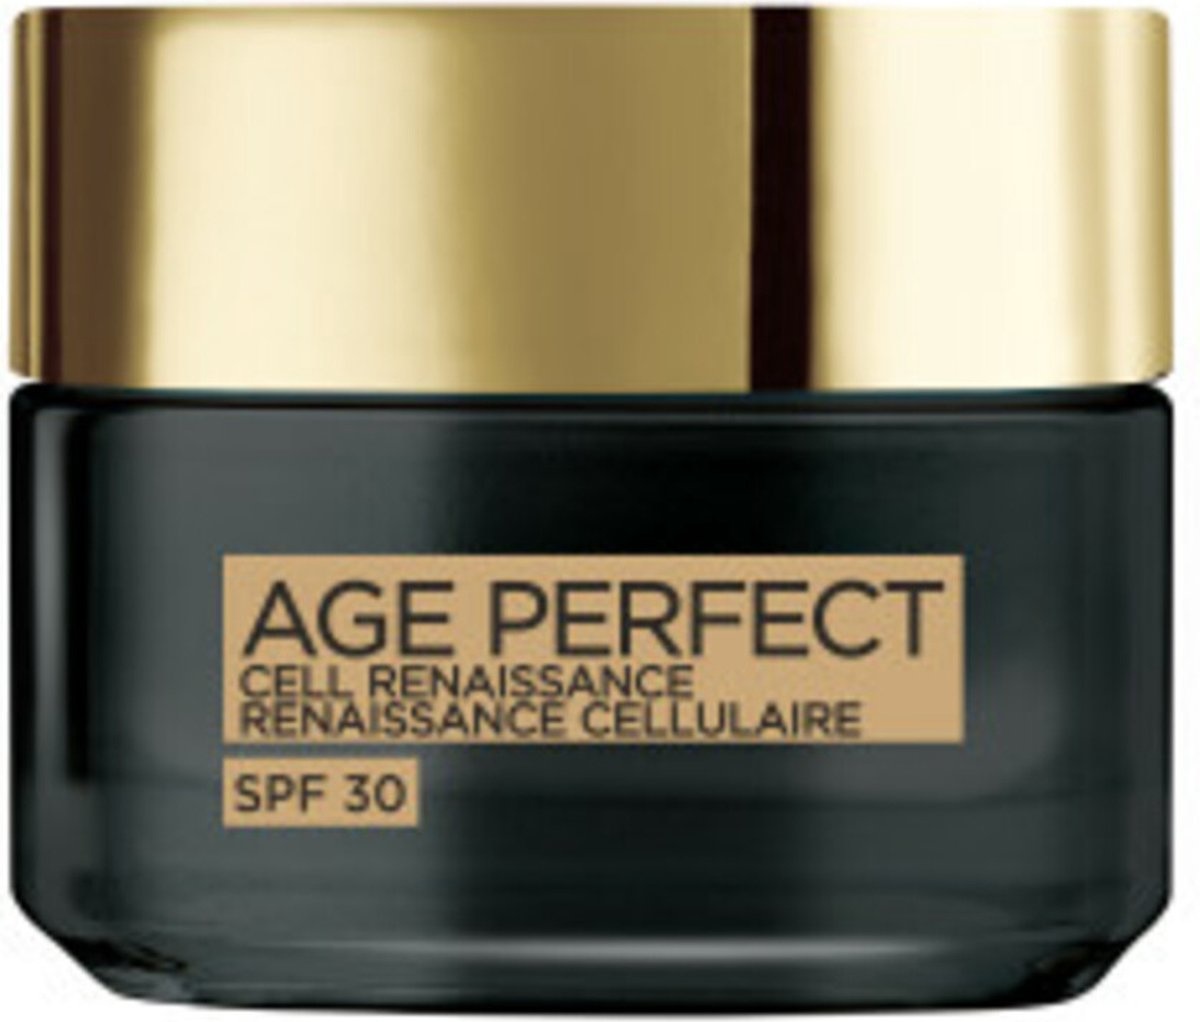 L'Oréal Paris Age Perfect Cell Renaissance SPF 30 Day Cream - 50 ml